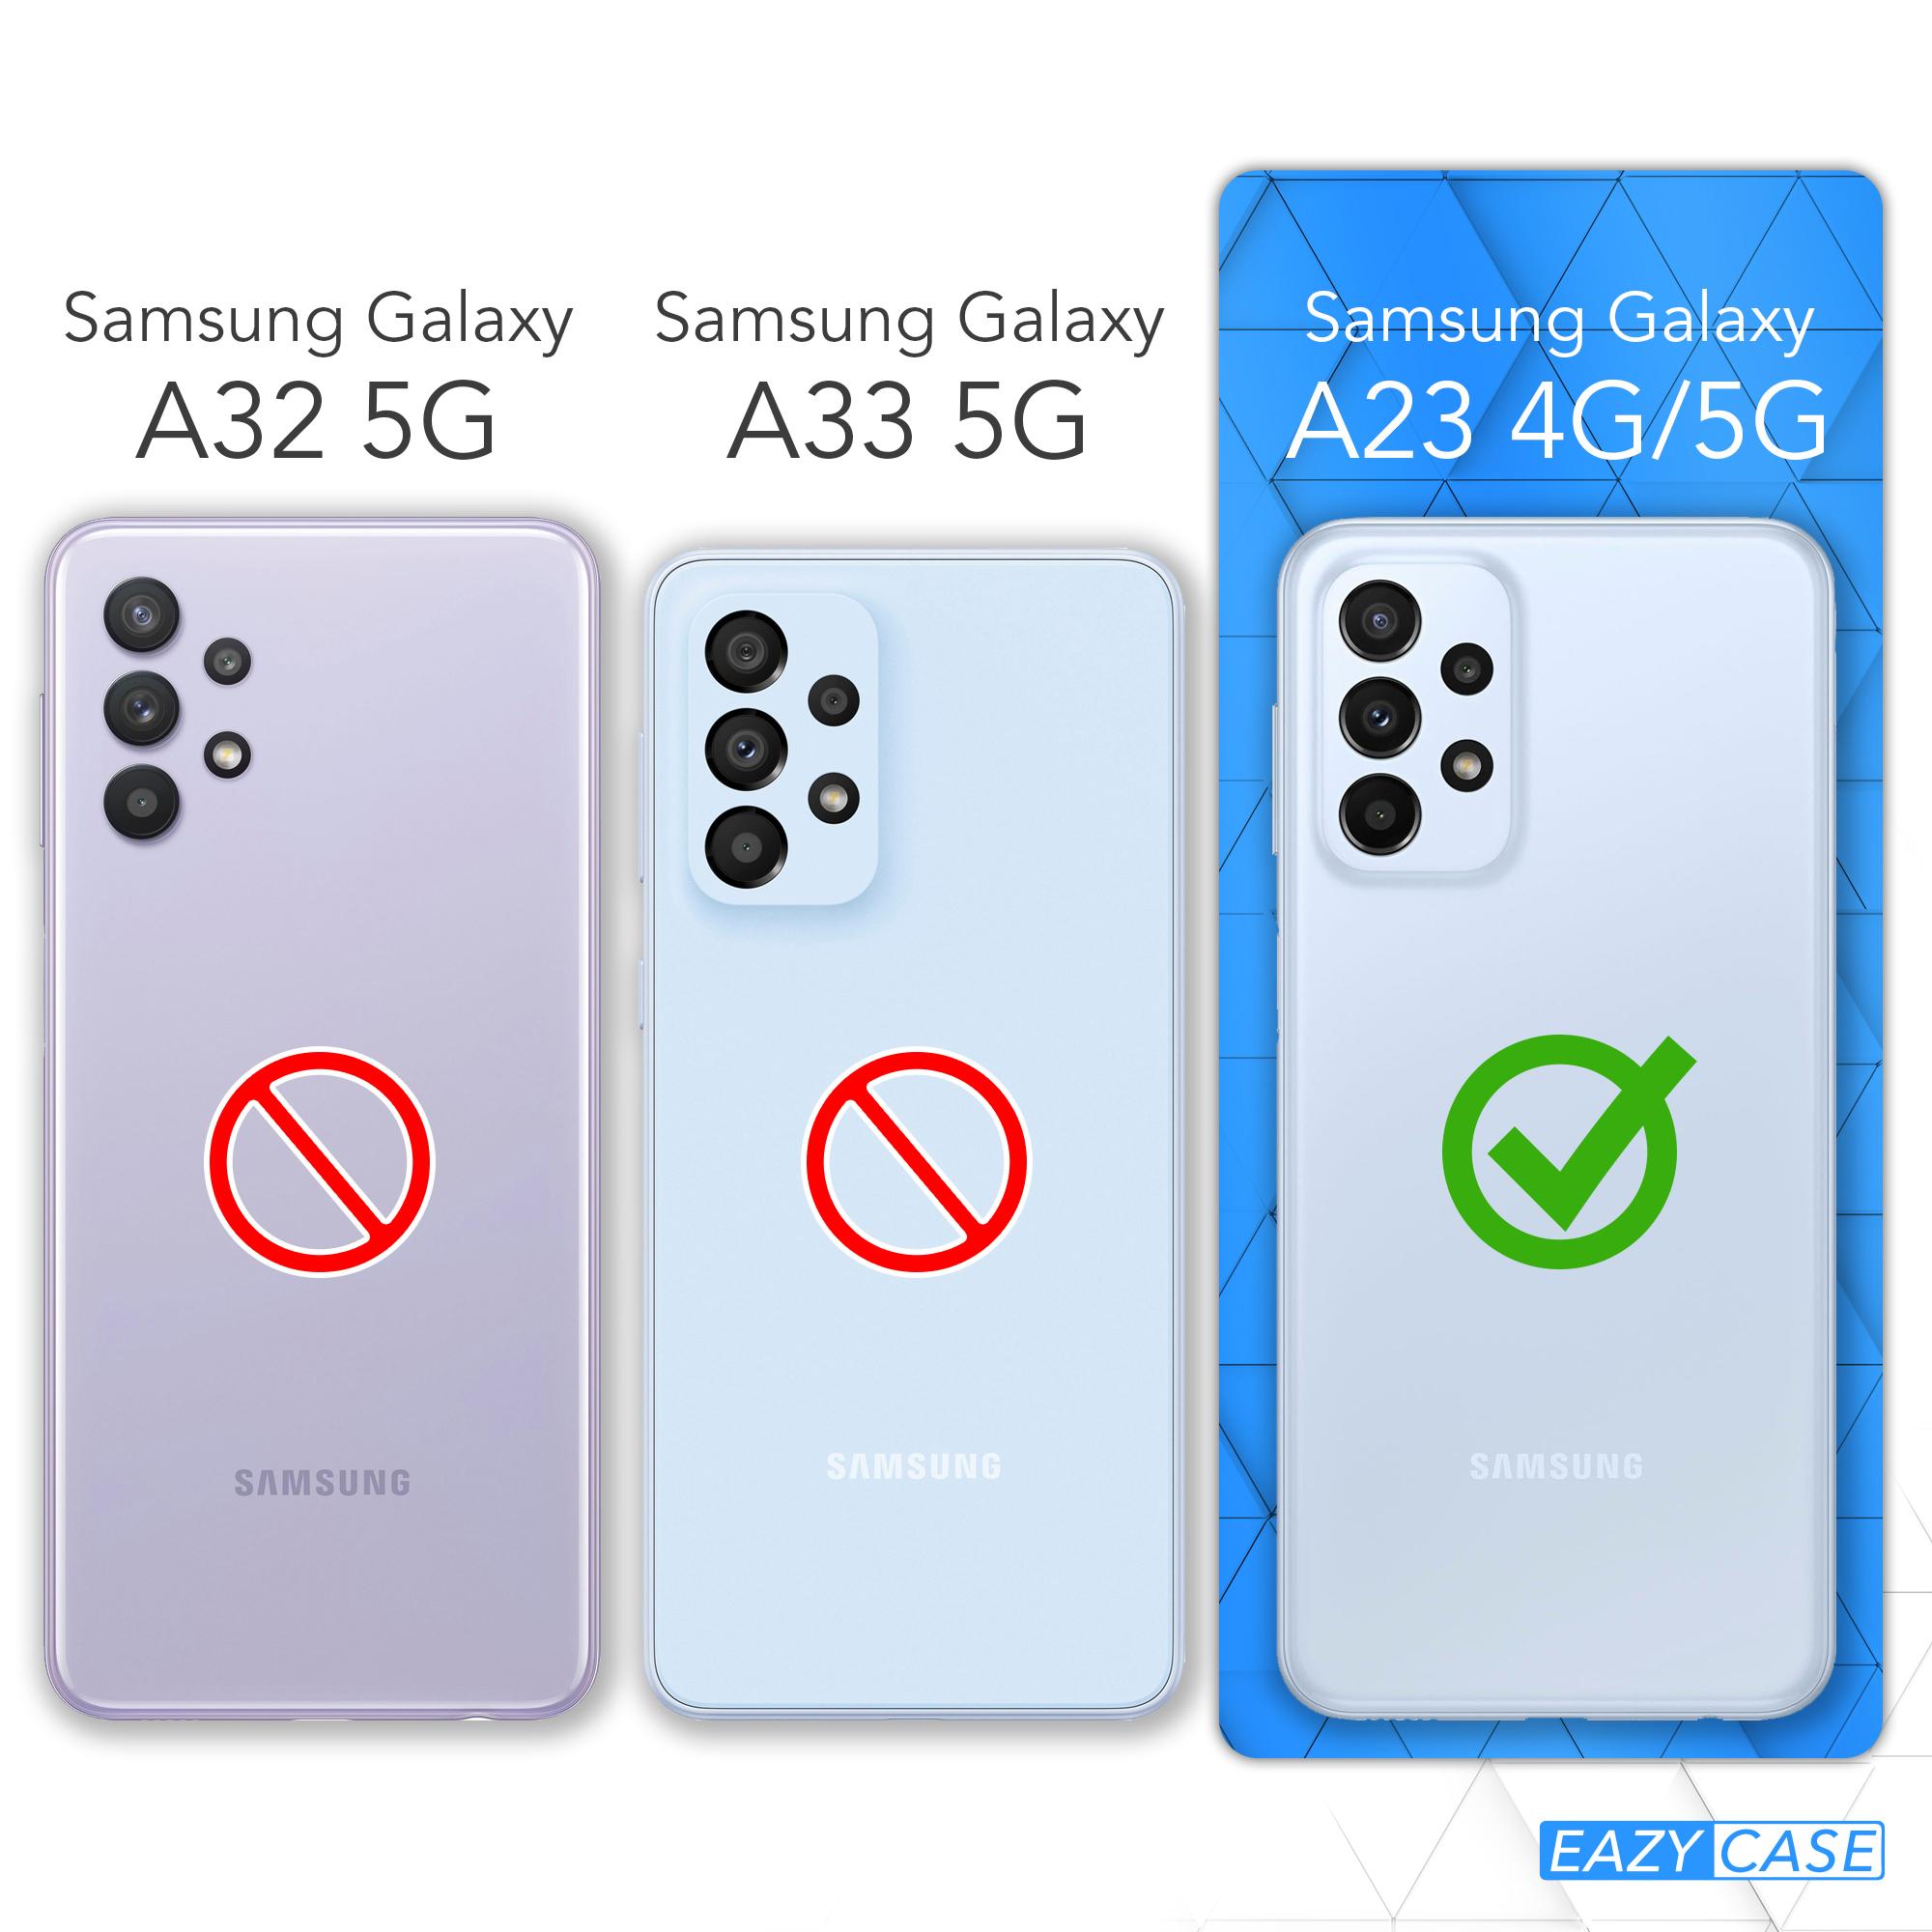 Handycase CASE / A23 Galaxy Samsung, Backcover, TPU EAZY Silikon Matt, Blau Petrol 5G,